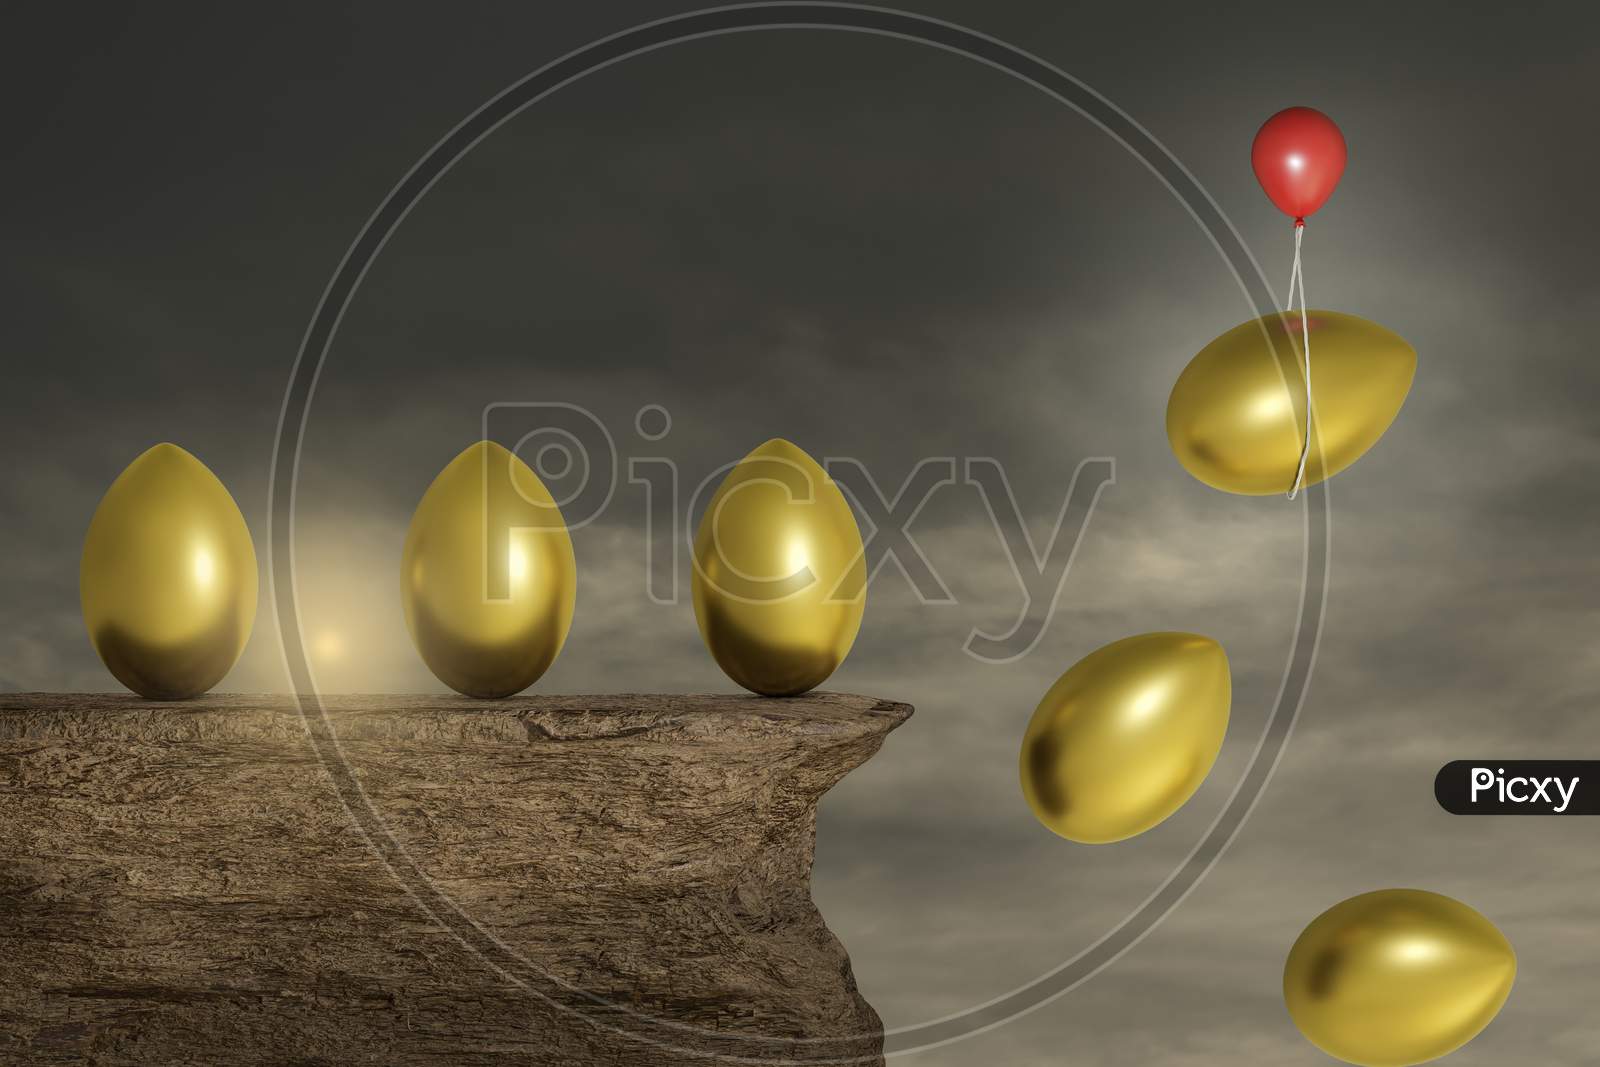 One Golden Egg, Graphics